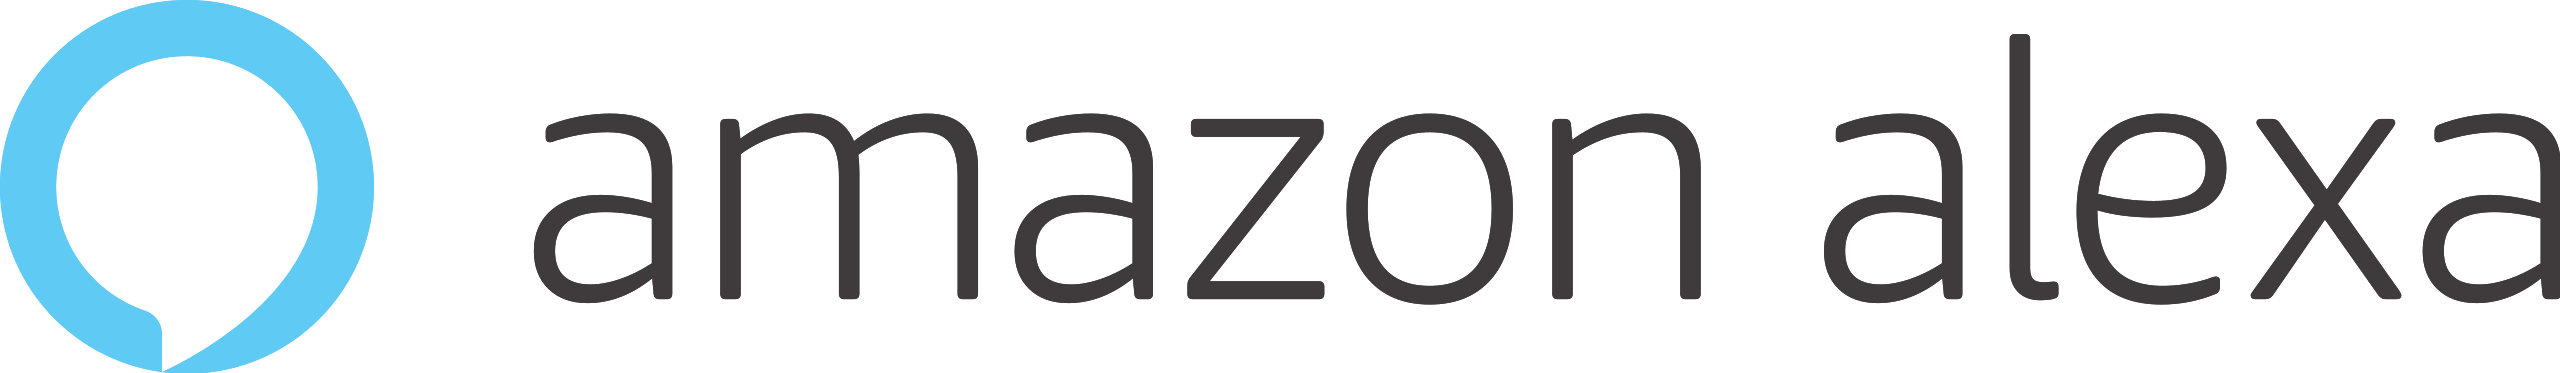 Amazon-Alexa.png (67 KB)